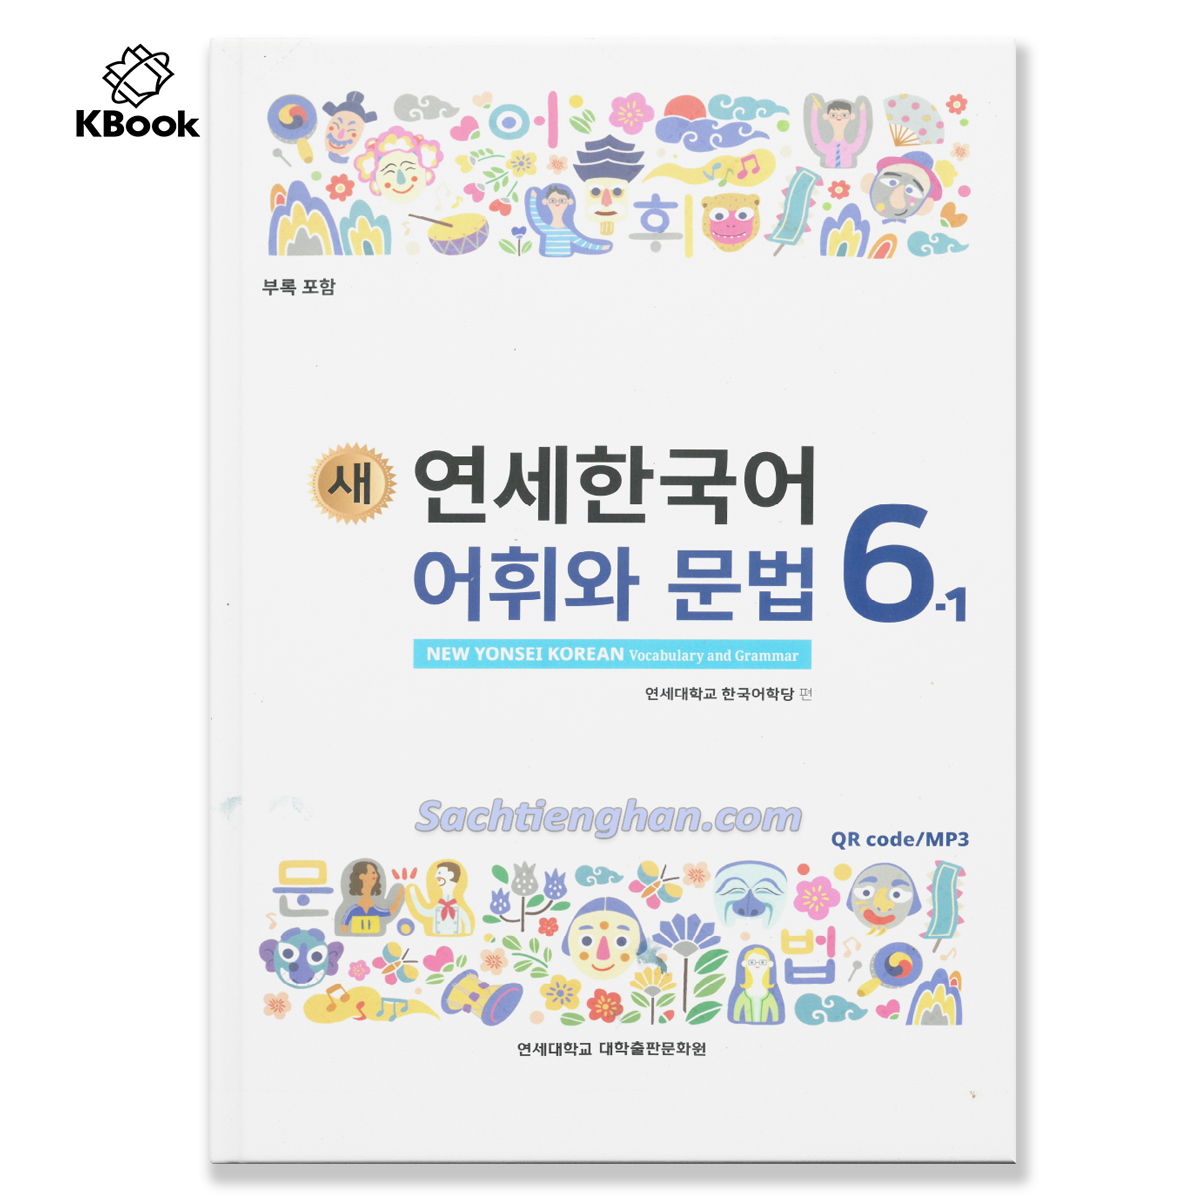 [BẢN MÀU XỊN] Giáo trình Tiếng Hàn New Yonsei Korean Từ Vựng Ngữ Pháp 6.1 - 새 연세한국어 어휘와 문법 6.1